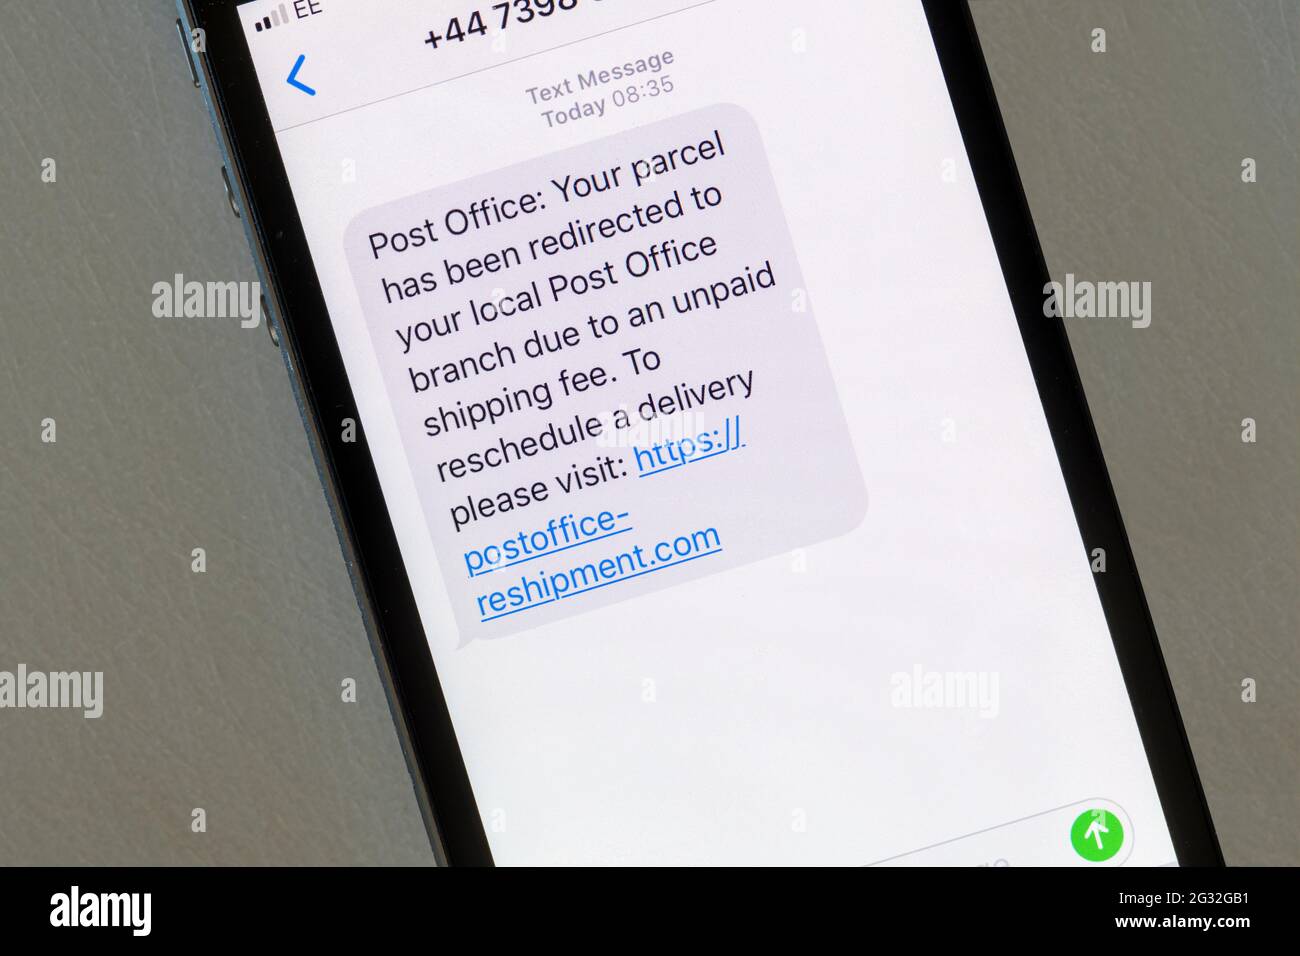 Message d'escroquerie affiché sur un iphone qui prétend être du bureau de poste pour reprogrammer une livraison de colis. Banque D'Images